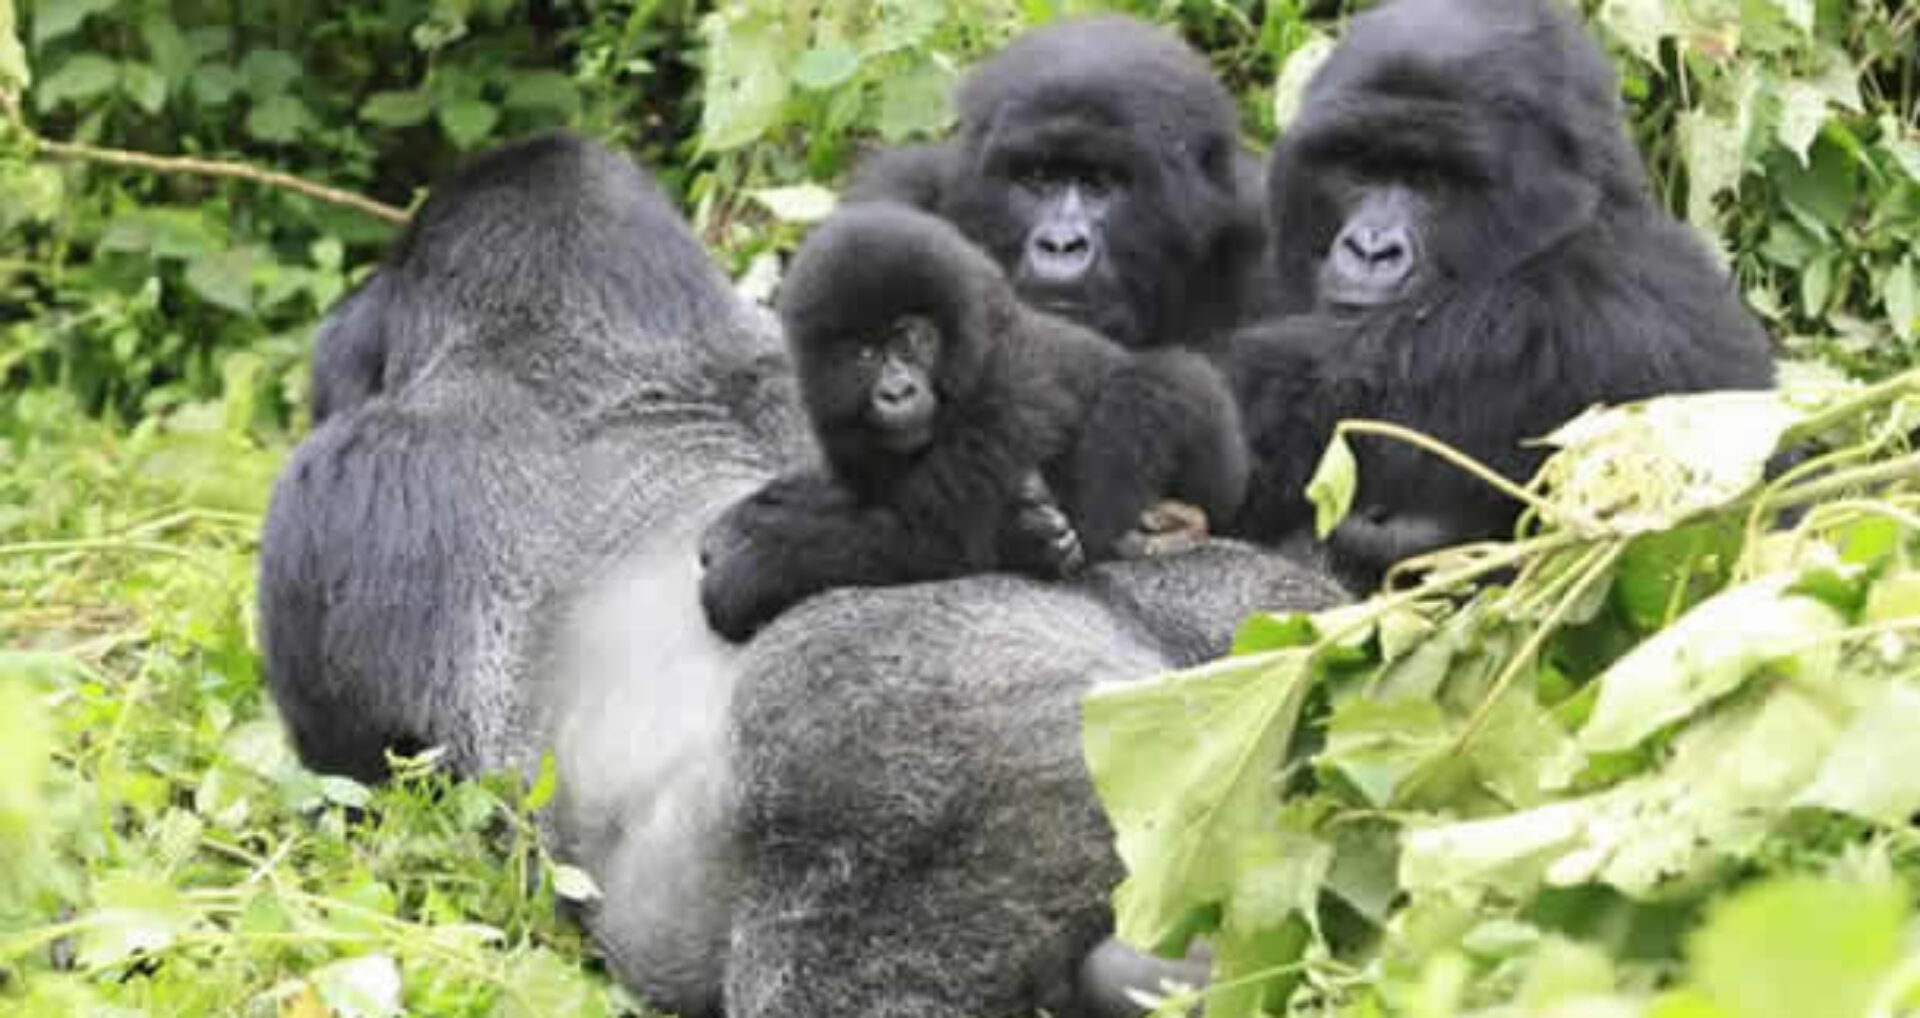 gorilla safaris